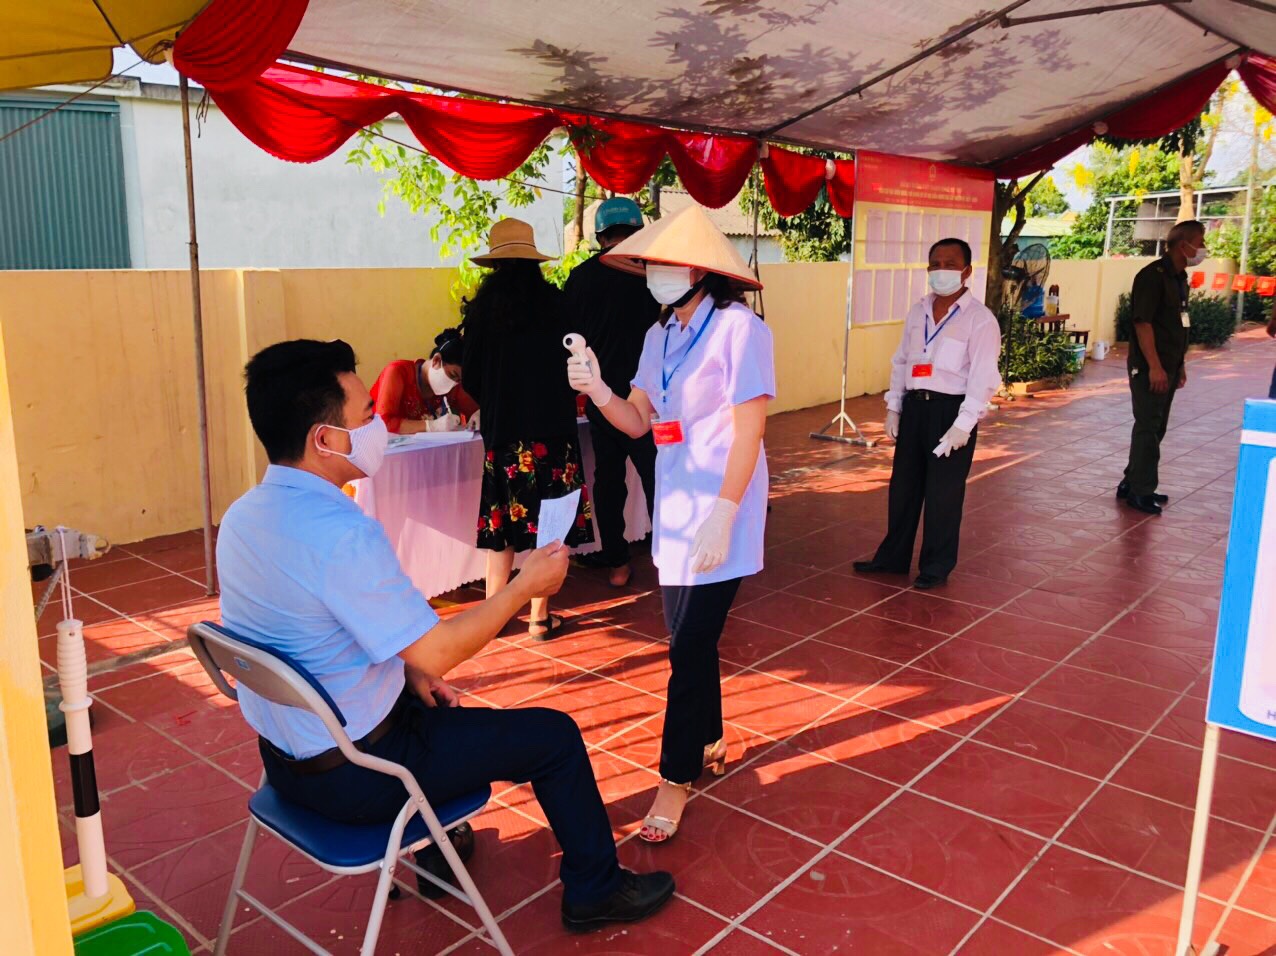 Quảng Ninh chuyển cả hòm phiếu lưu động tới giường bệnh cho bệnh nhân bỏ phiếu - Ảnh 3.